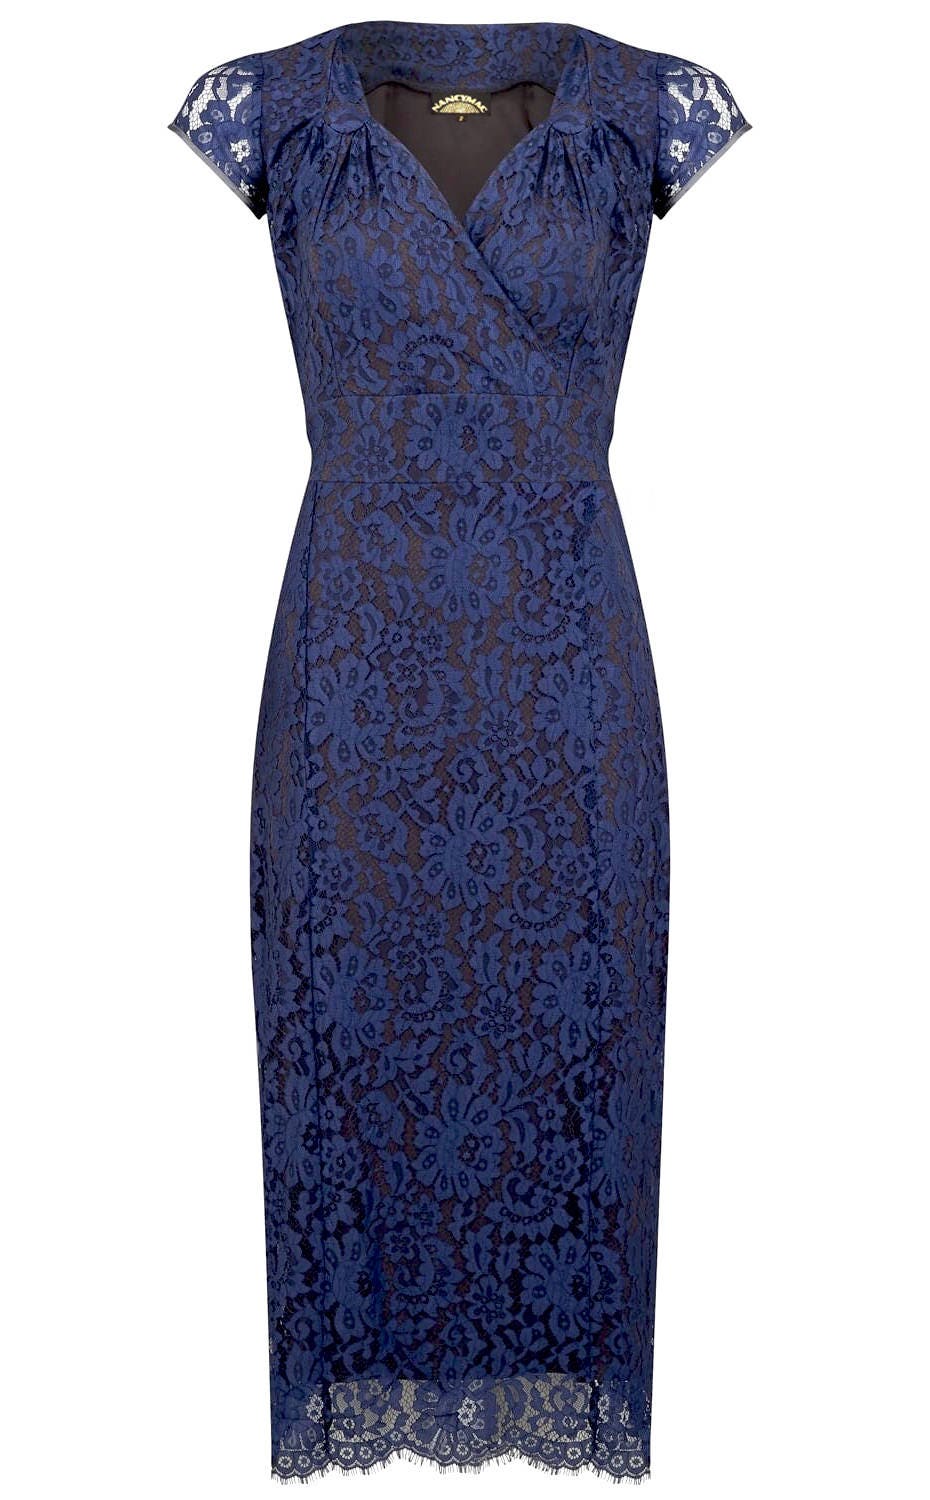 Bespoke Vintage Style Bridesmaid Dresses Midnight Blue Lace | Etsy UK